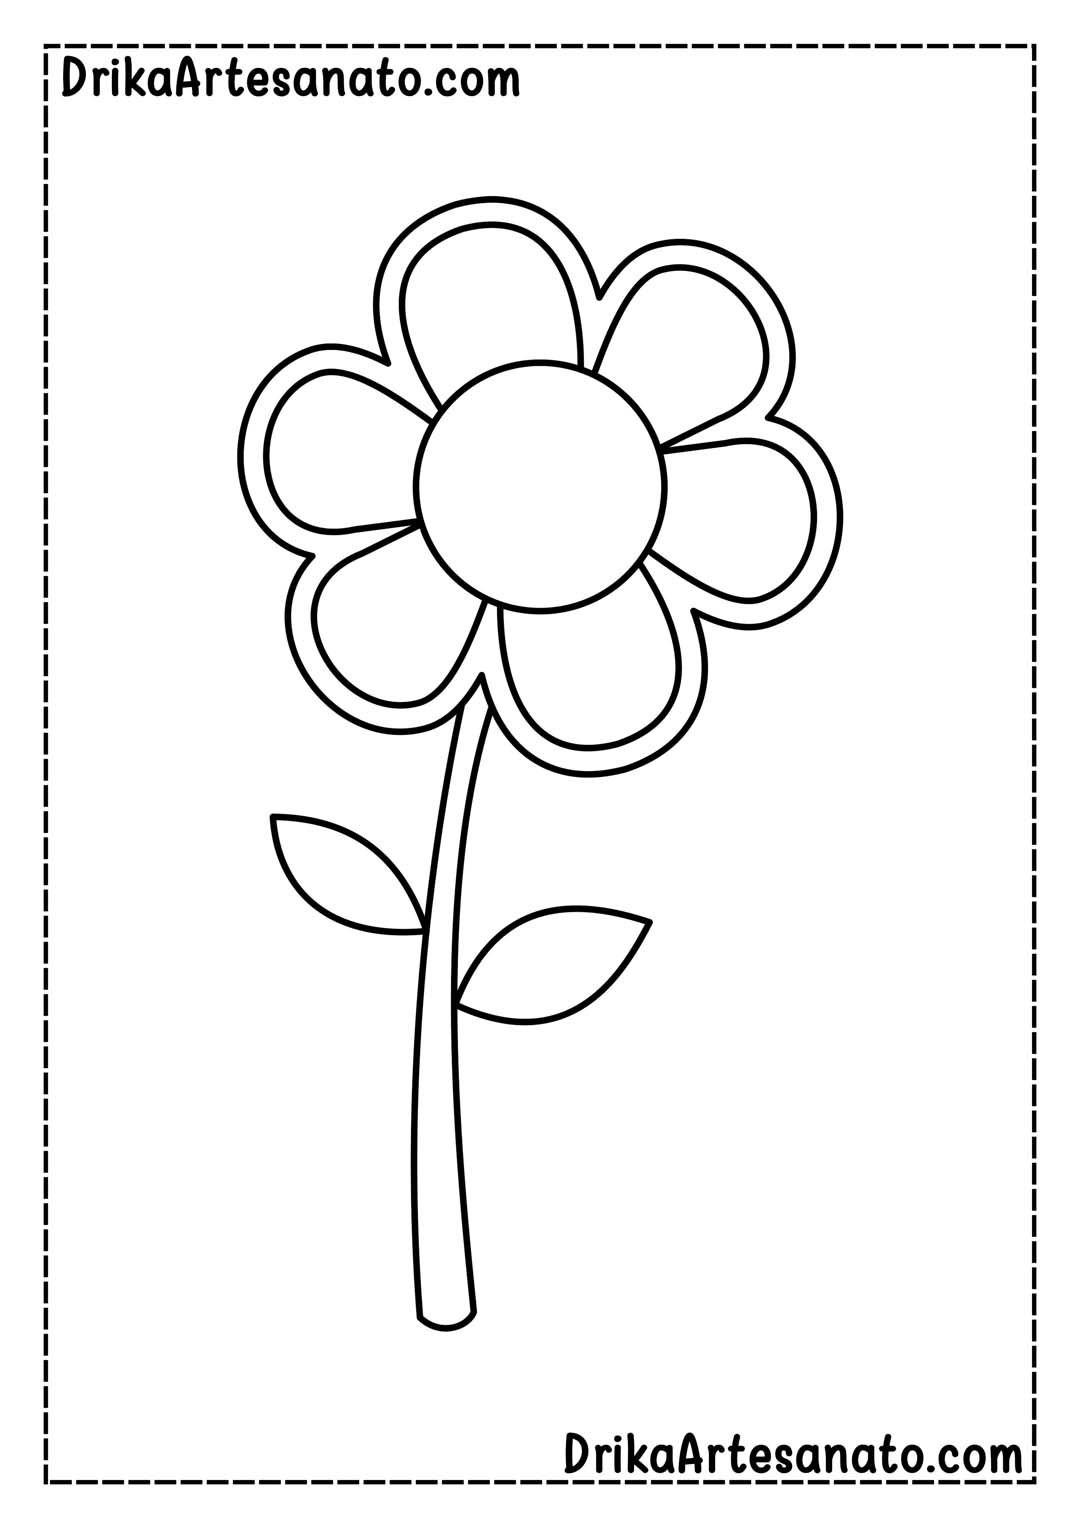 Desenho de Flor com 6 Pétalas para Imprimir em Tamanho Real